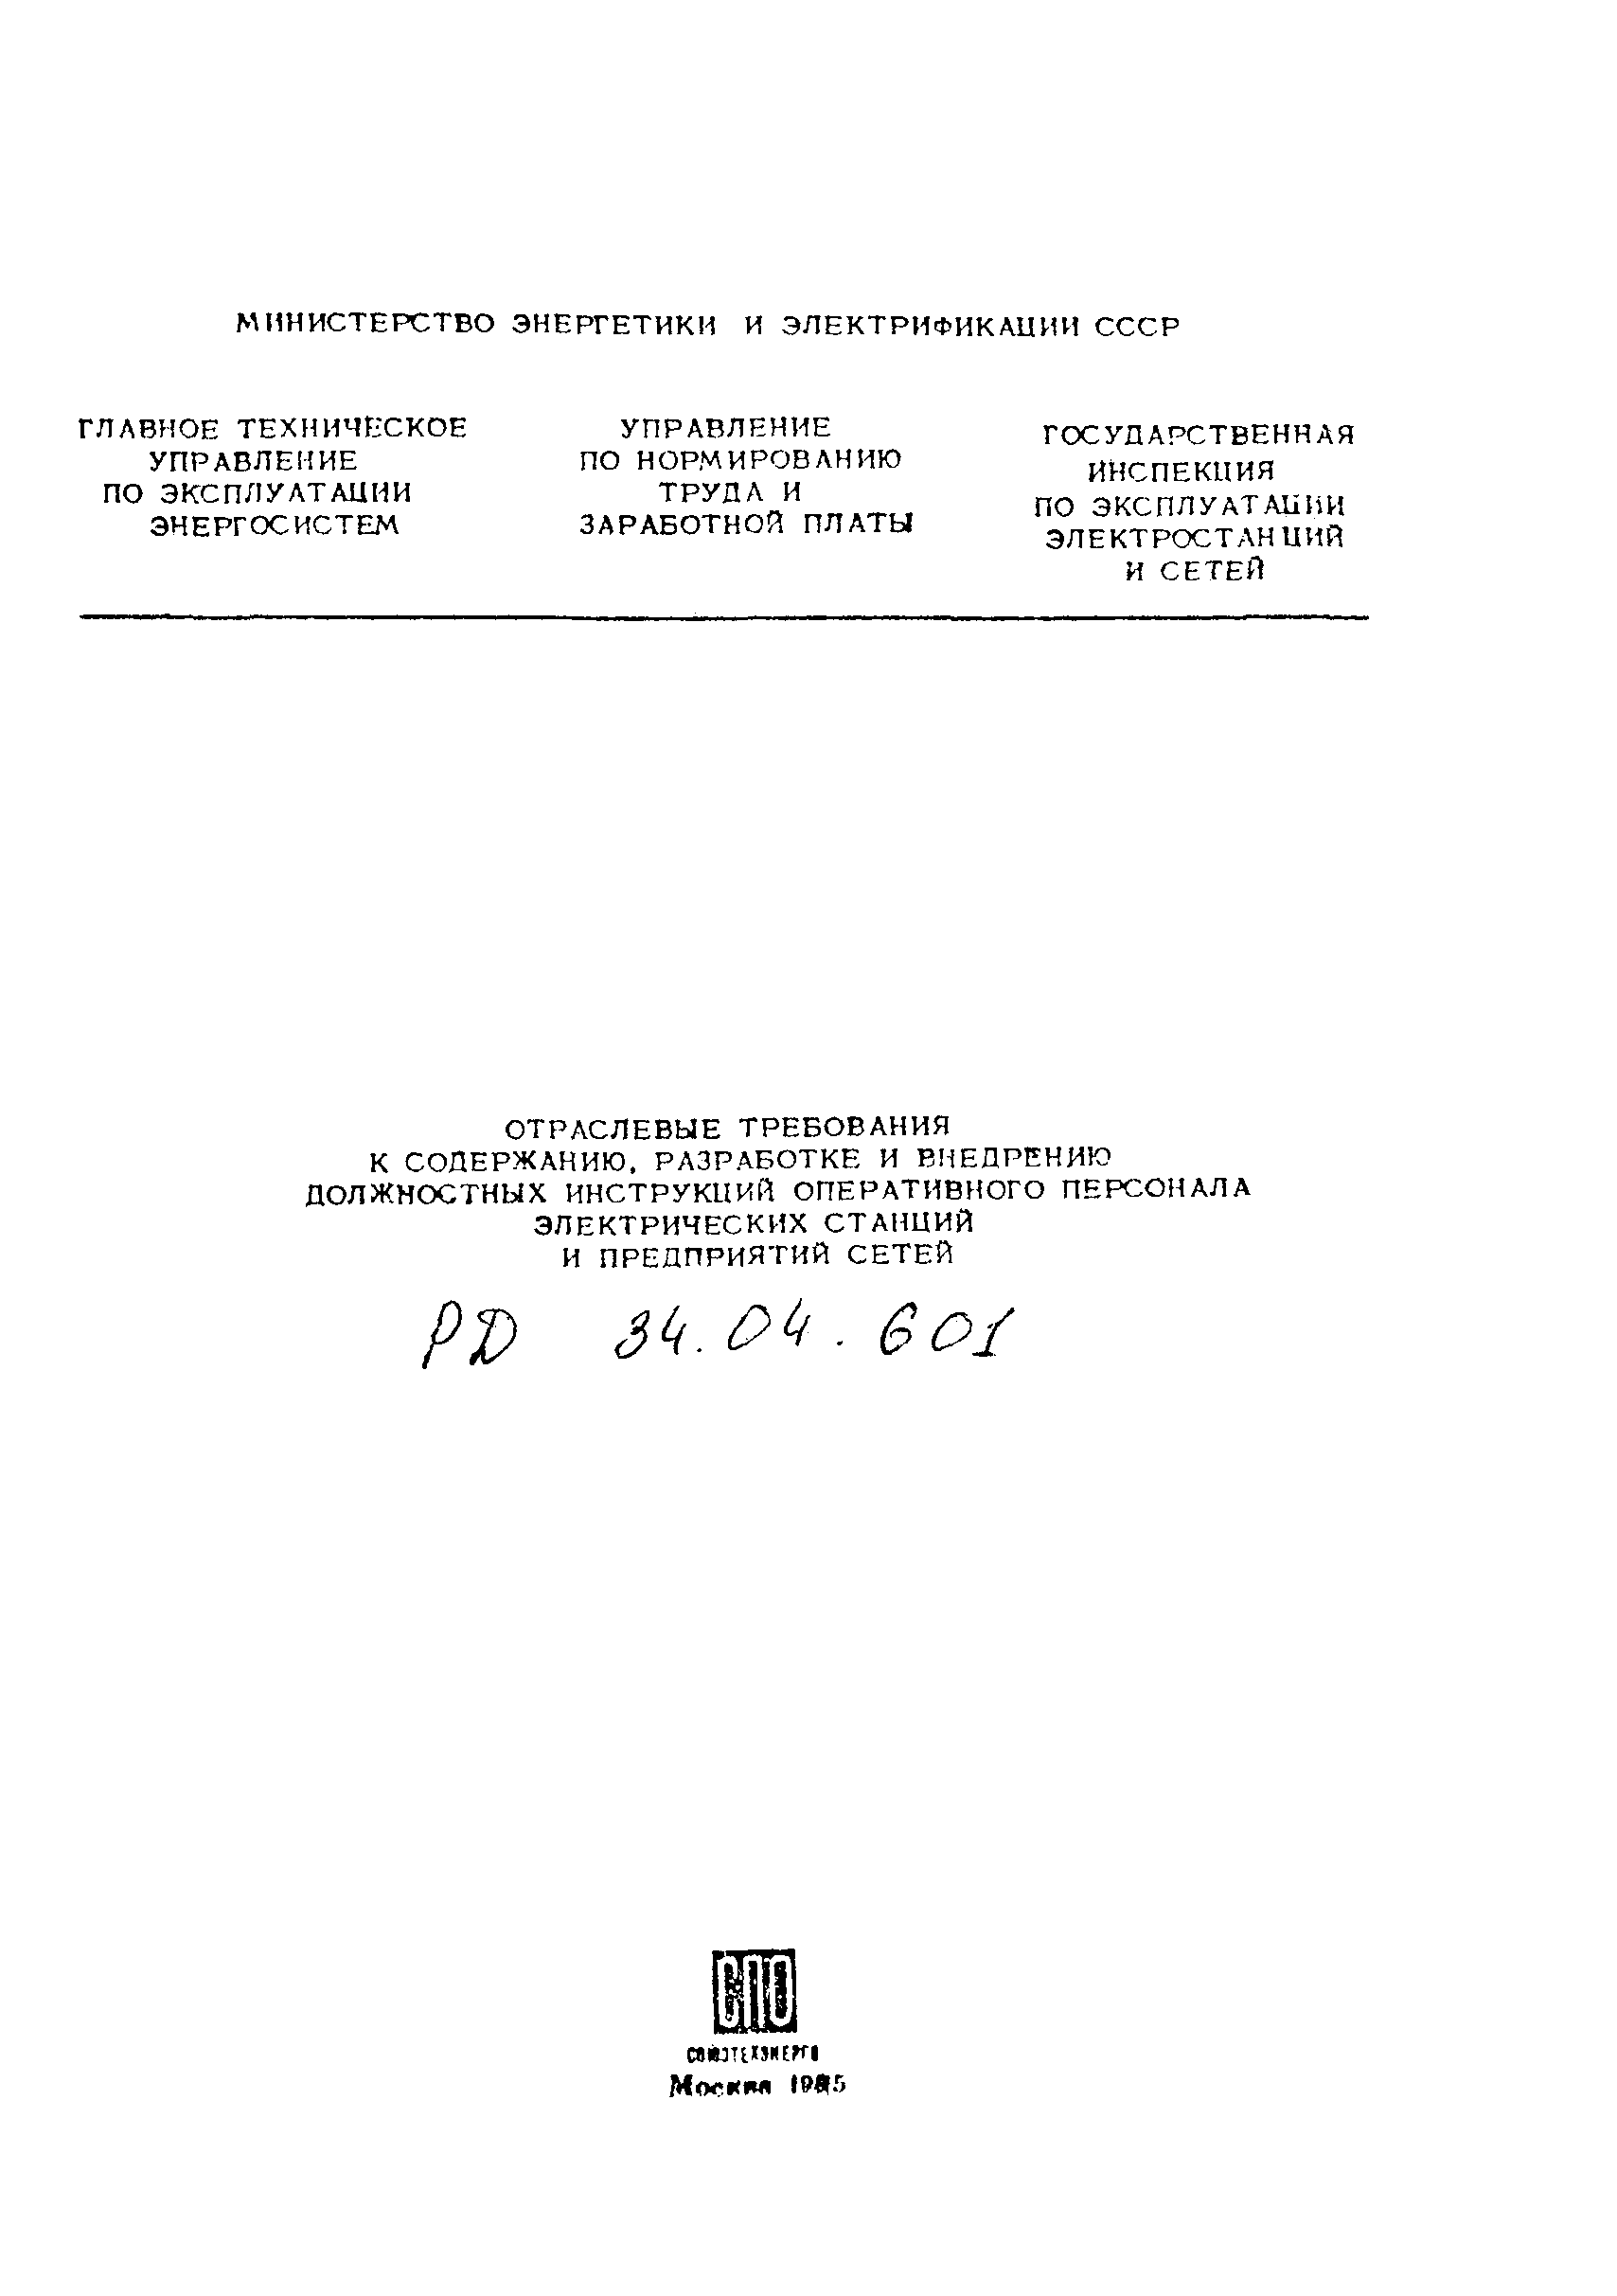 РД 34.04.601-85